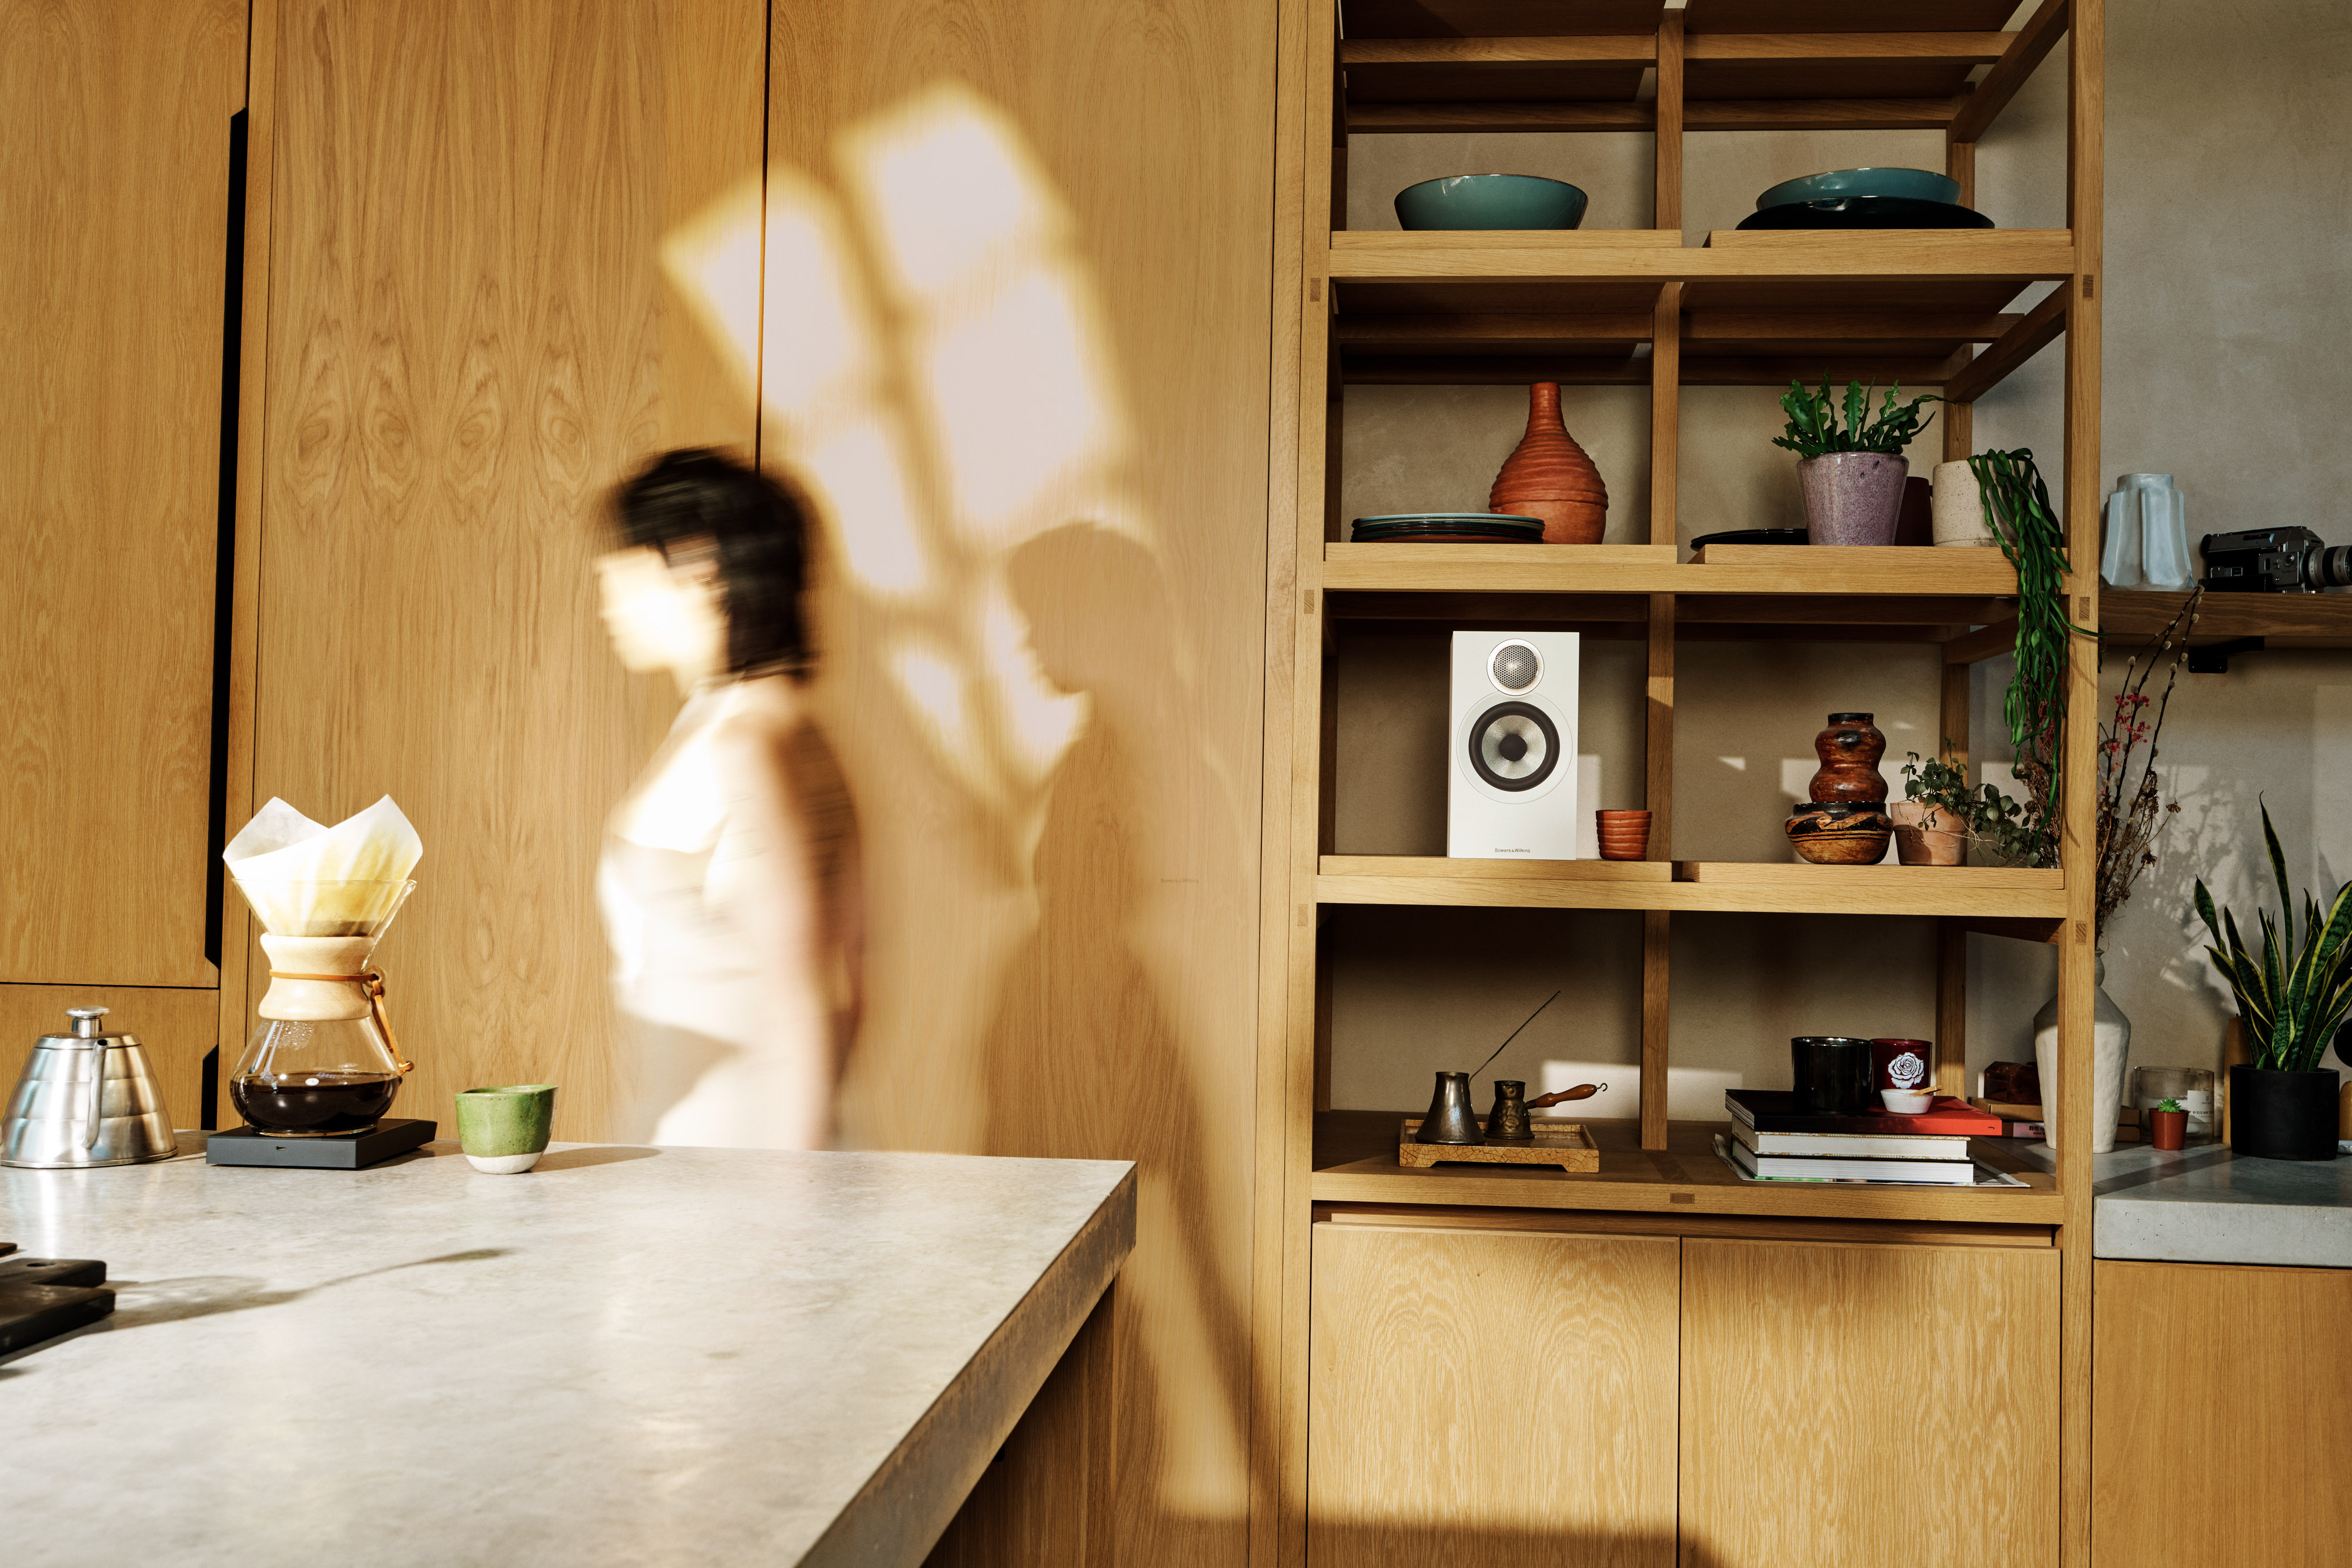 Bowers & Wilkins 607 S3 Weiß Lautsprecher ohne Abdeckung in einem Regal in einer Küche